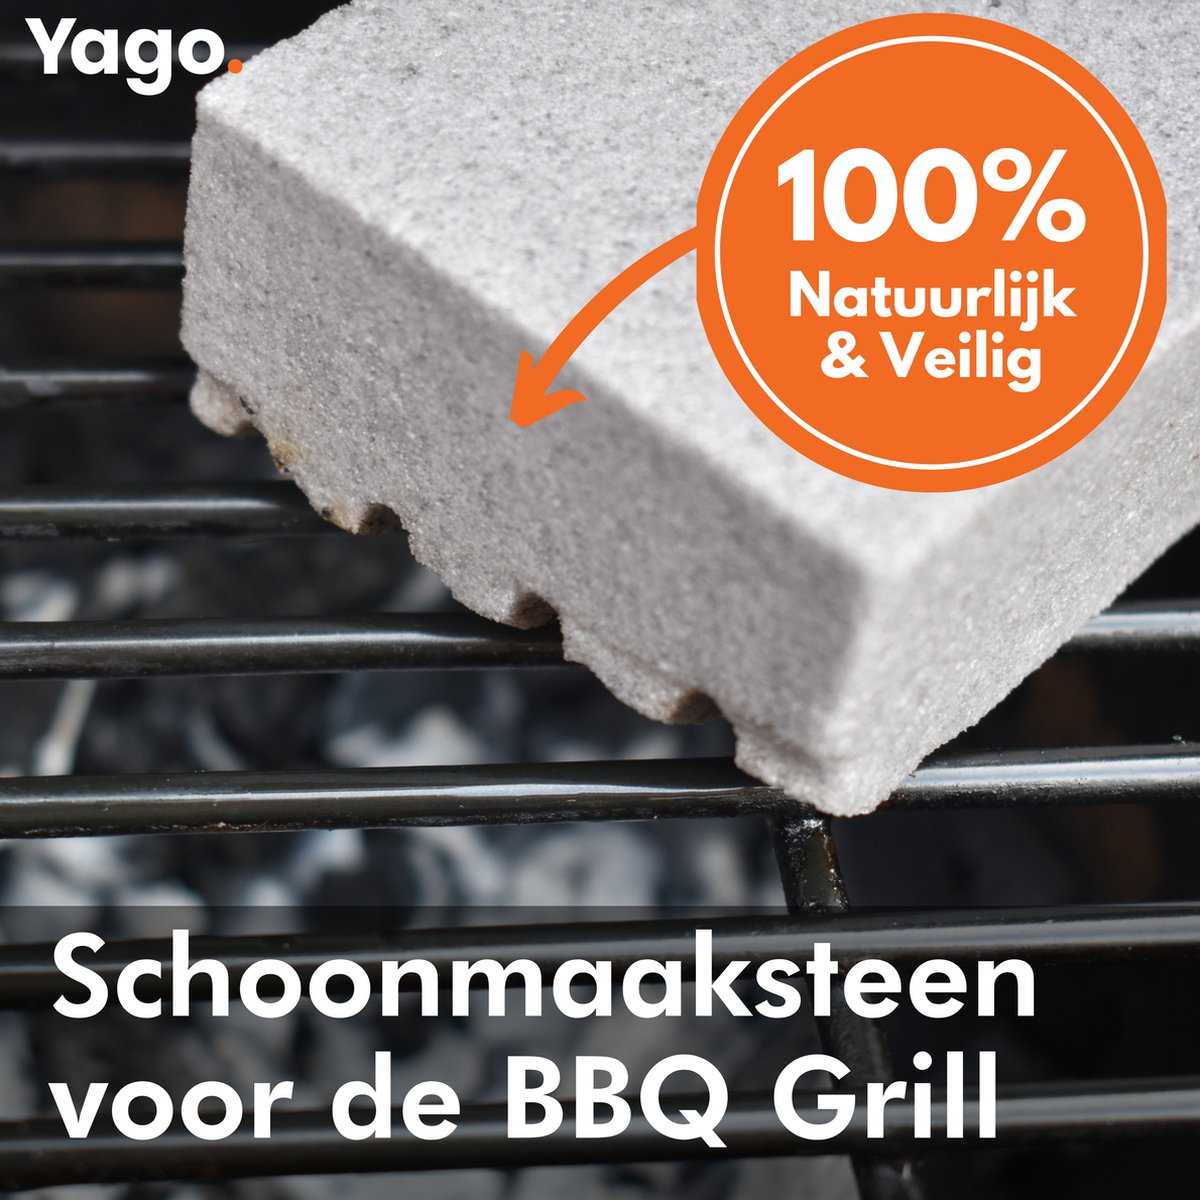 Yago Schoonmaaksteen voor de BBQ | 2 stuks | Barbecue | Grill Cleaner | Schoonmaken | Eenvoudig | Rooster | Pannen | Bakplaat | Puimsteen | Cleaning Block